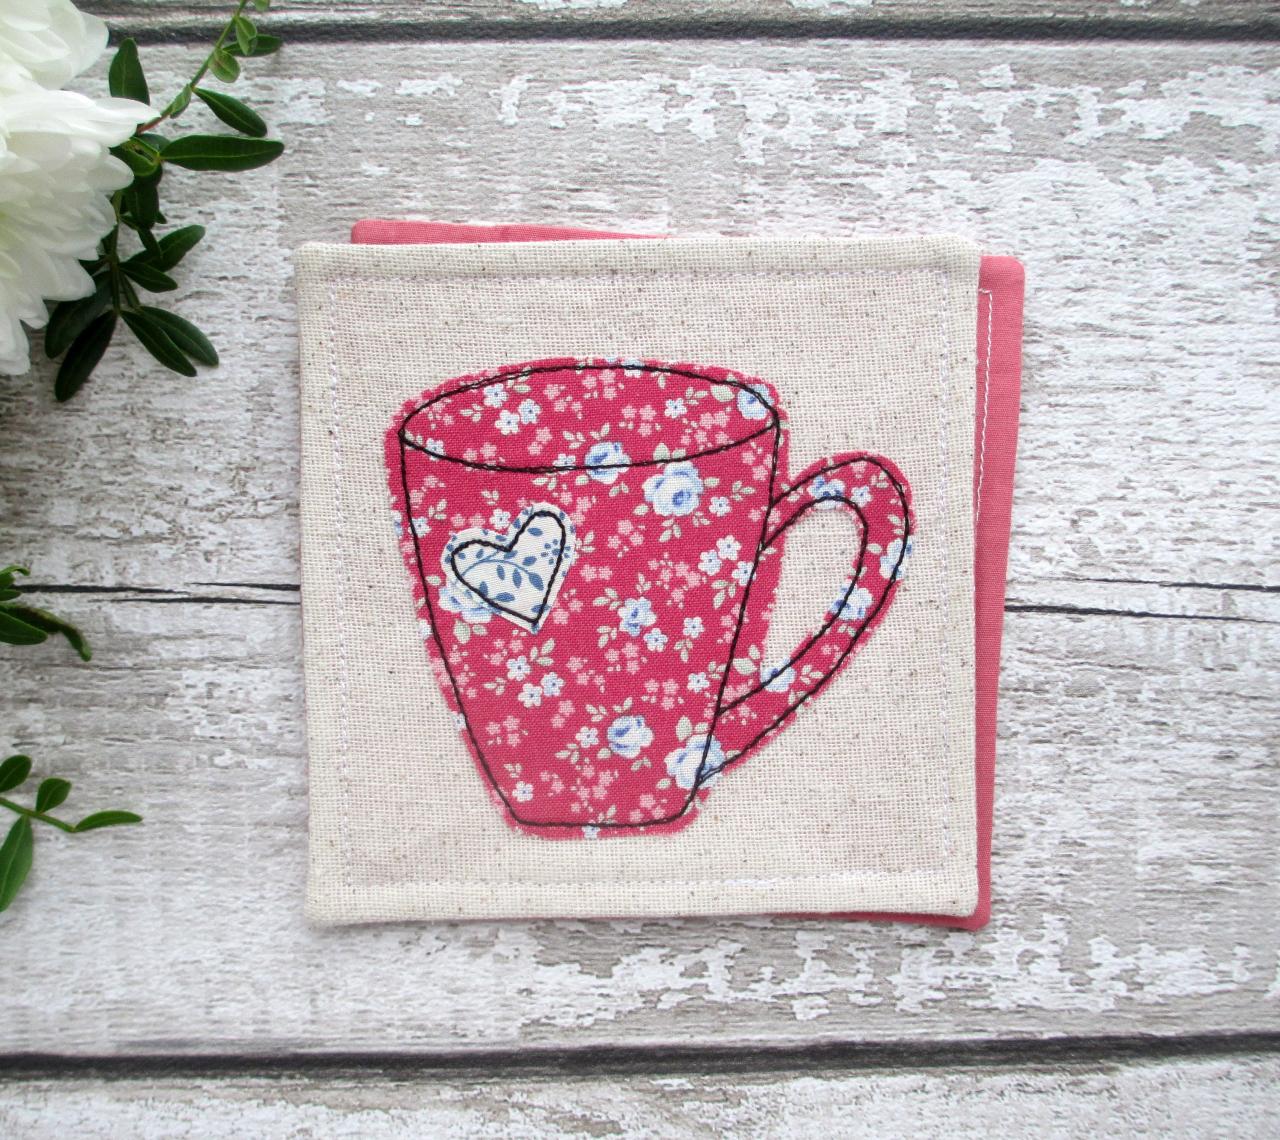 Mug Coaster, Small Gift Idea For A Tea Or Coffee Lover